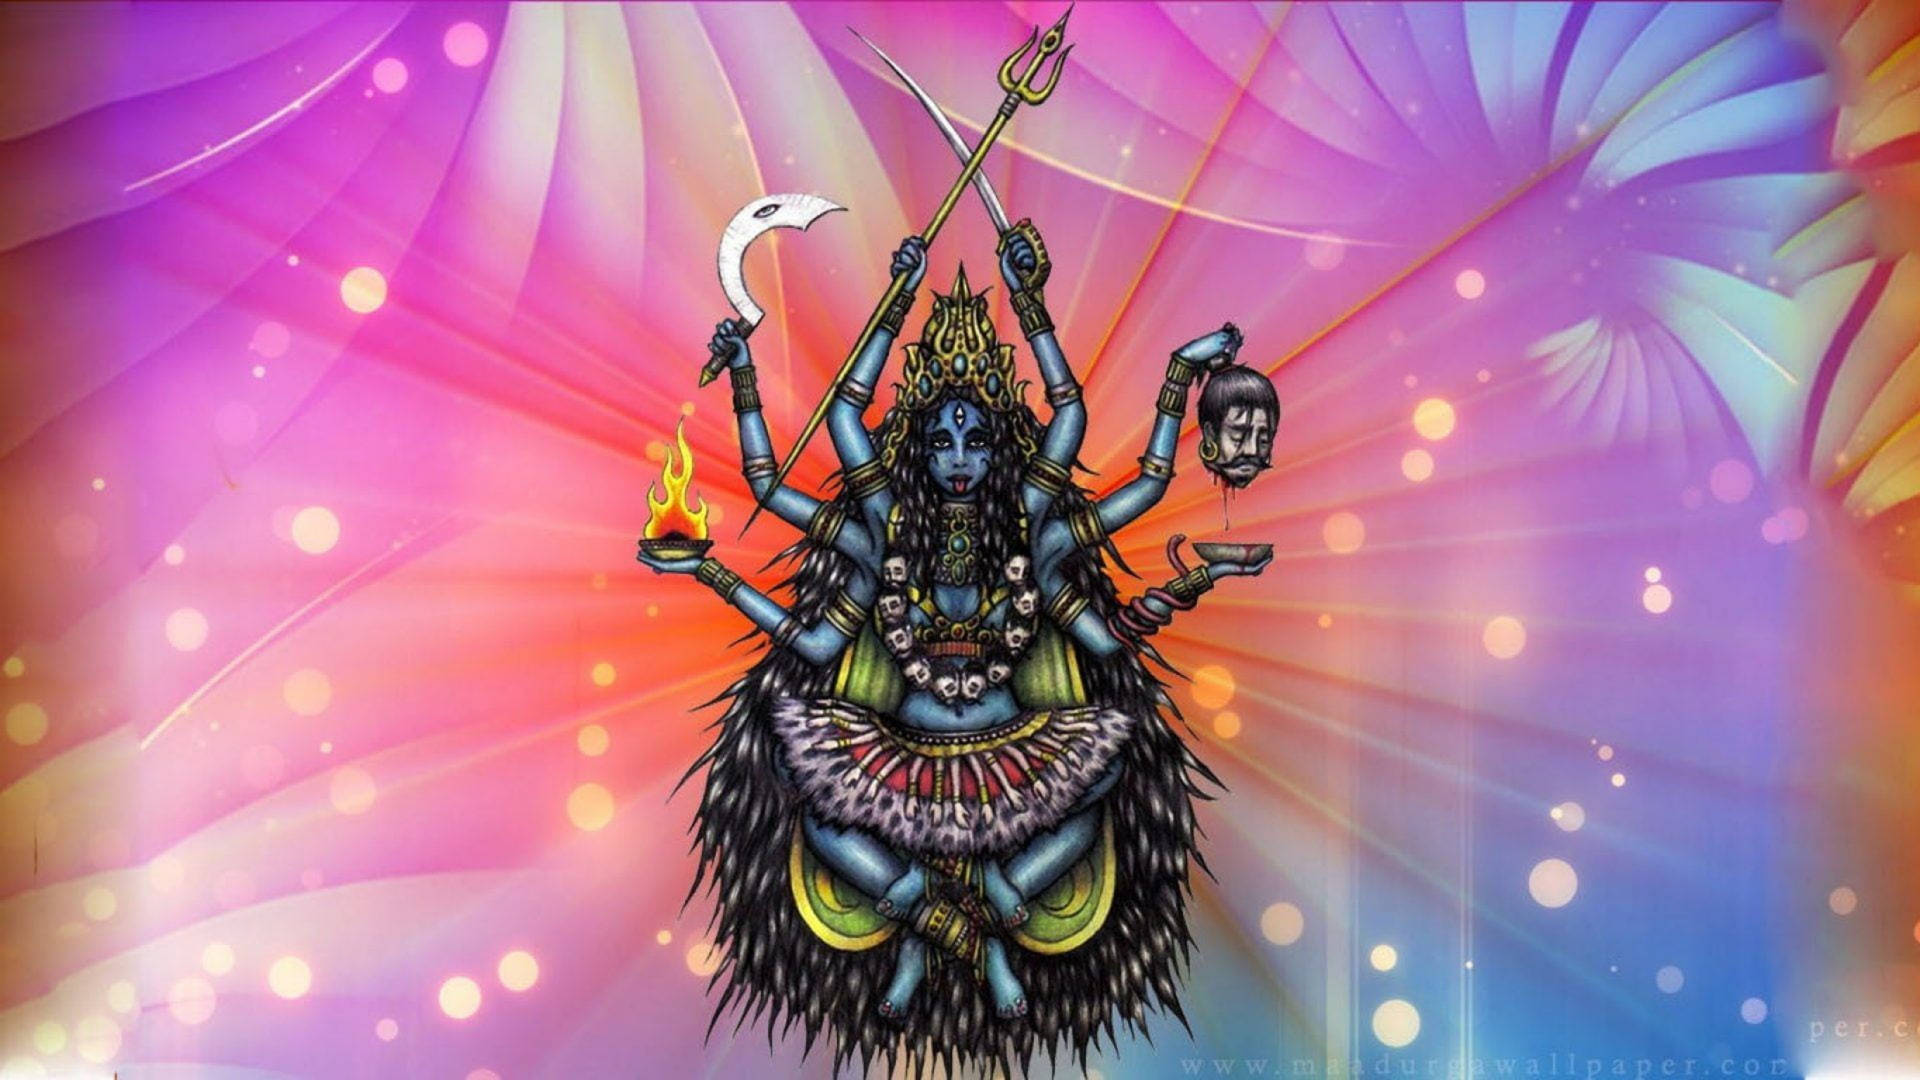 Goddess Kali Abstract Art Wallpaper